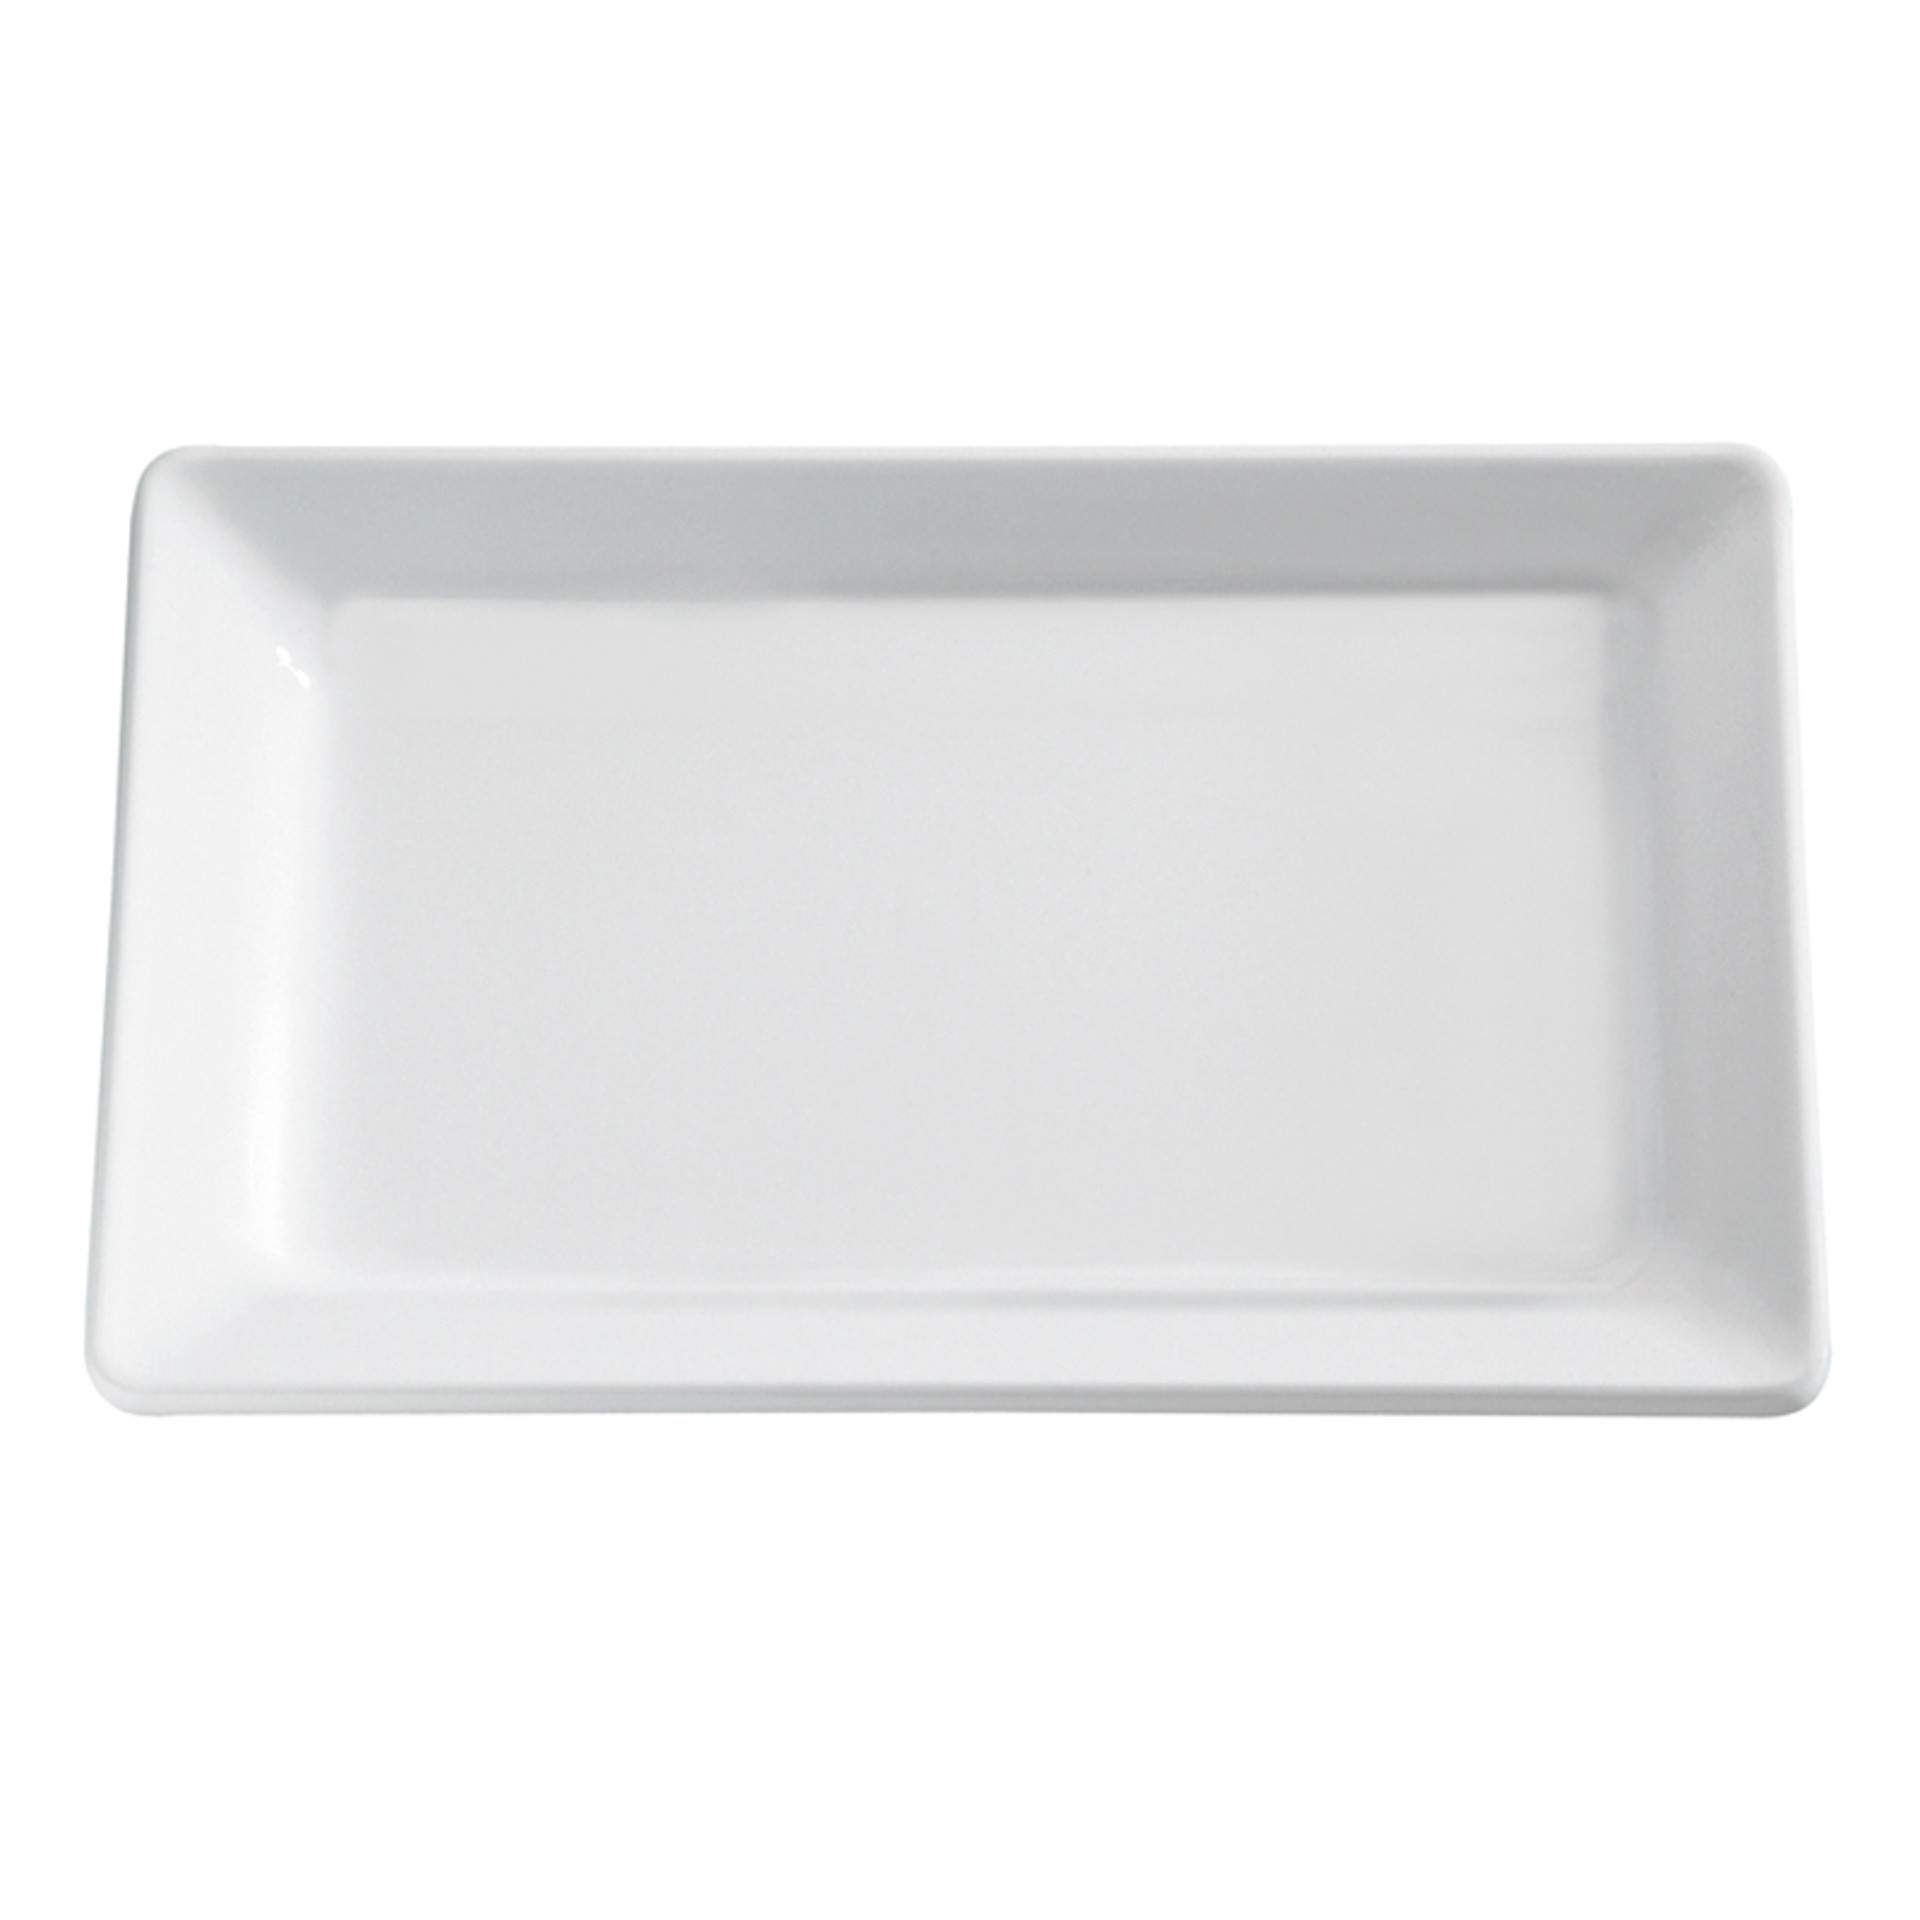 GN-Tablett - Serie Pure - weiß - Abm. 3 cm - GN 1/4 (265 x 162 mm) - Melamin - 83482-B